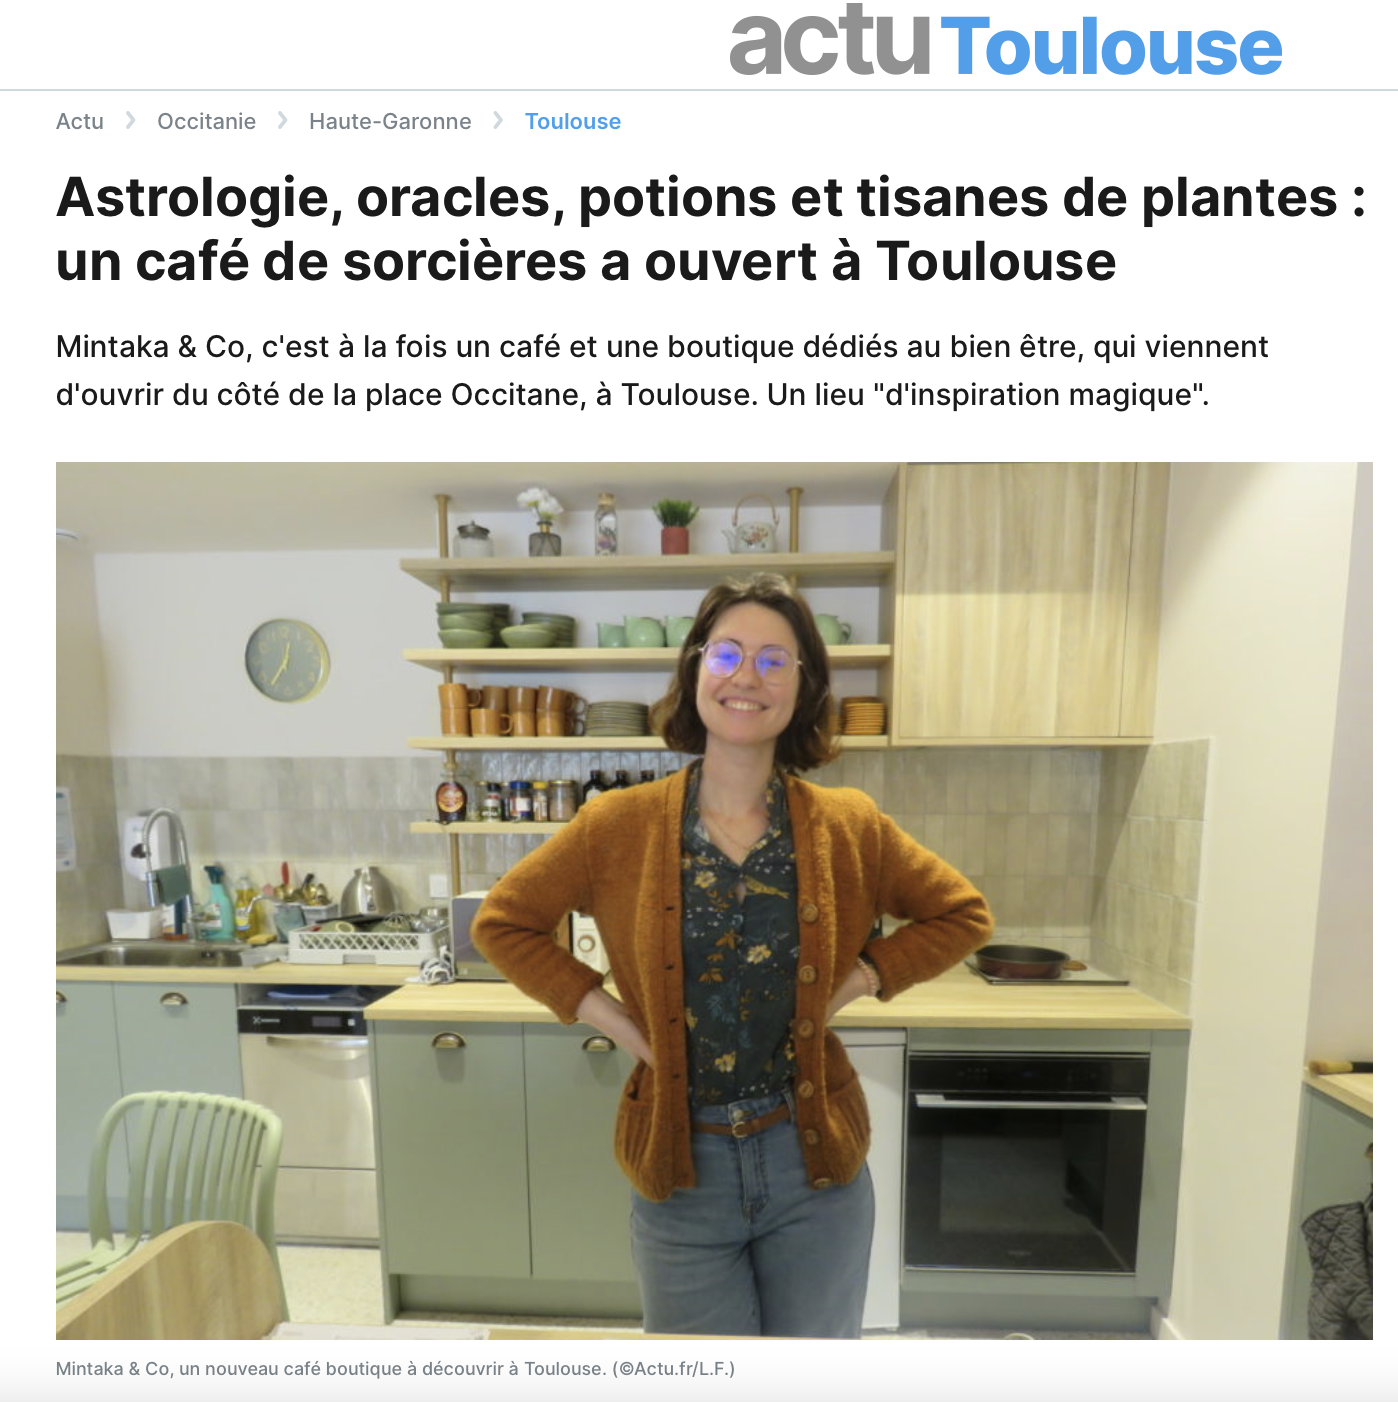 Astrologie, oracles, potions et tisanes de plantes : un café de sorcières a ouvert à Toulouse